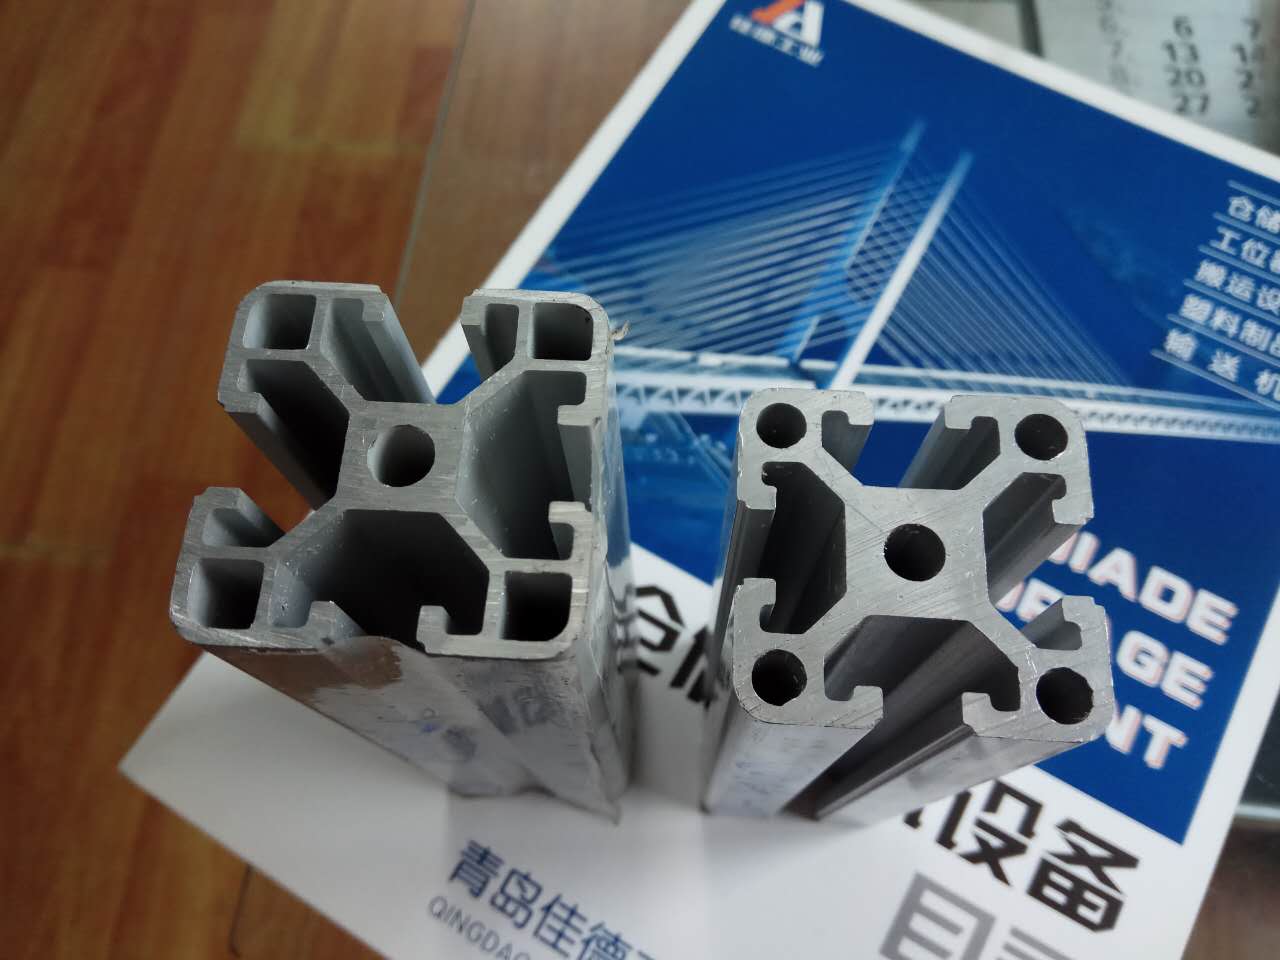 青岛工业4040铝型材厂家 青岛铝型材加工切割 青岛铝型材价格